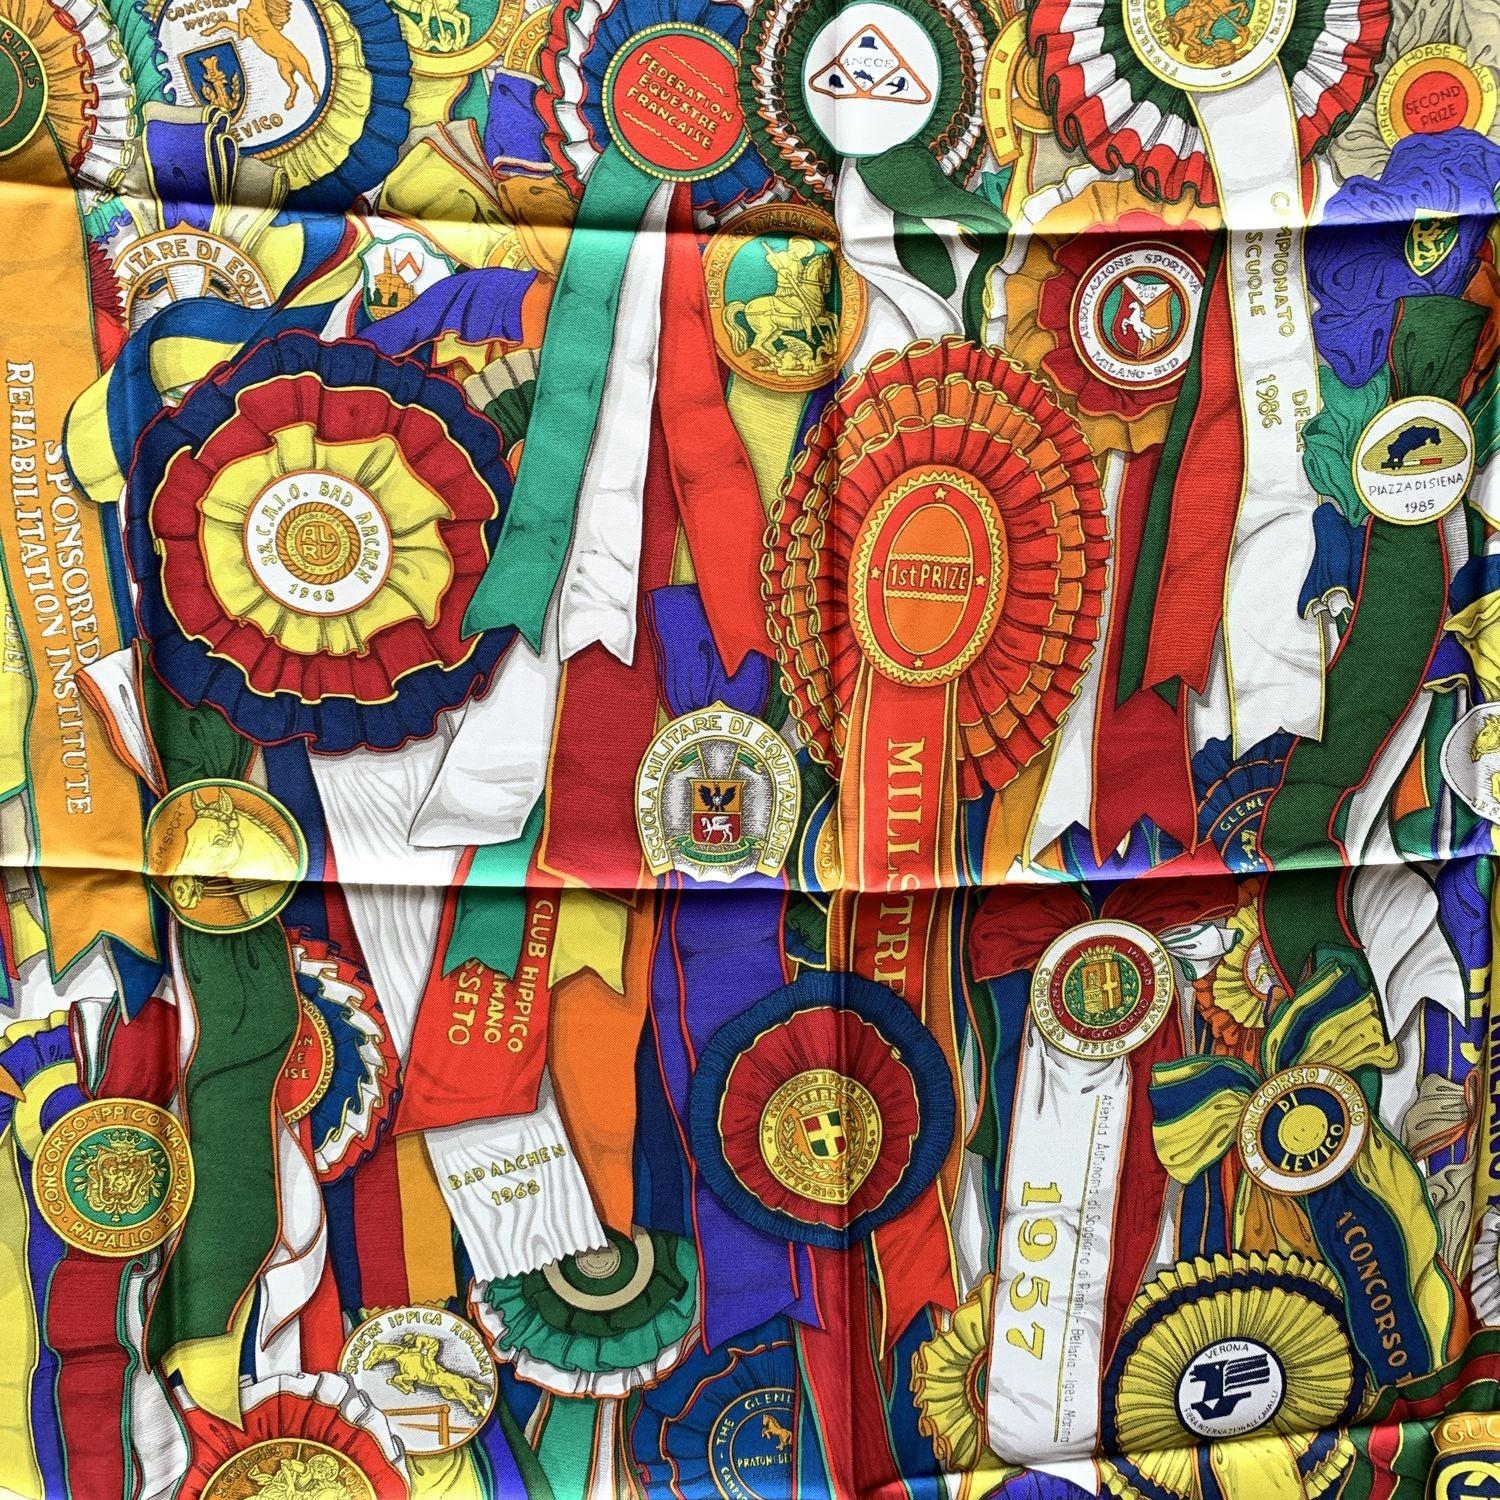 Gucci Vintage Seidenschal aus den 80er Jahren. Es zeigt mehrfarbige Bänder und Pferderennen Auszeichnungen Rosetten Design auf rotem Hintergrund. Handgerollter Saum. 100% Seide. Abmessungen: 35 x 35 Zoll - 90 x 90 cm. Aufgedruckte GUCCI-Signatur.